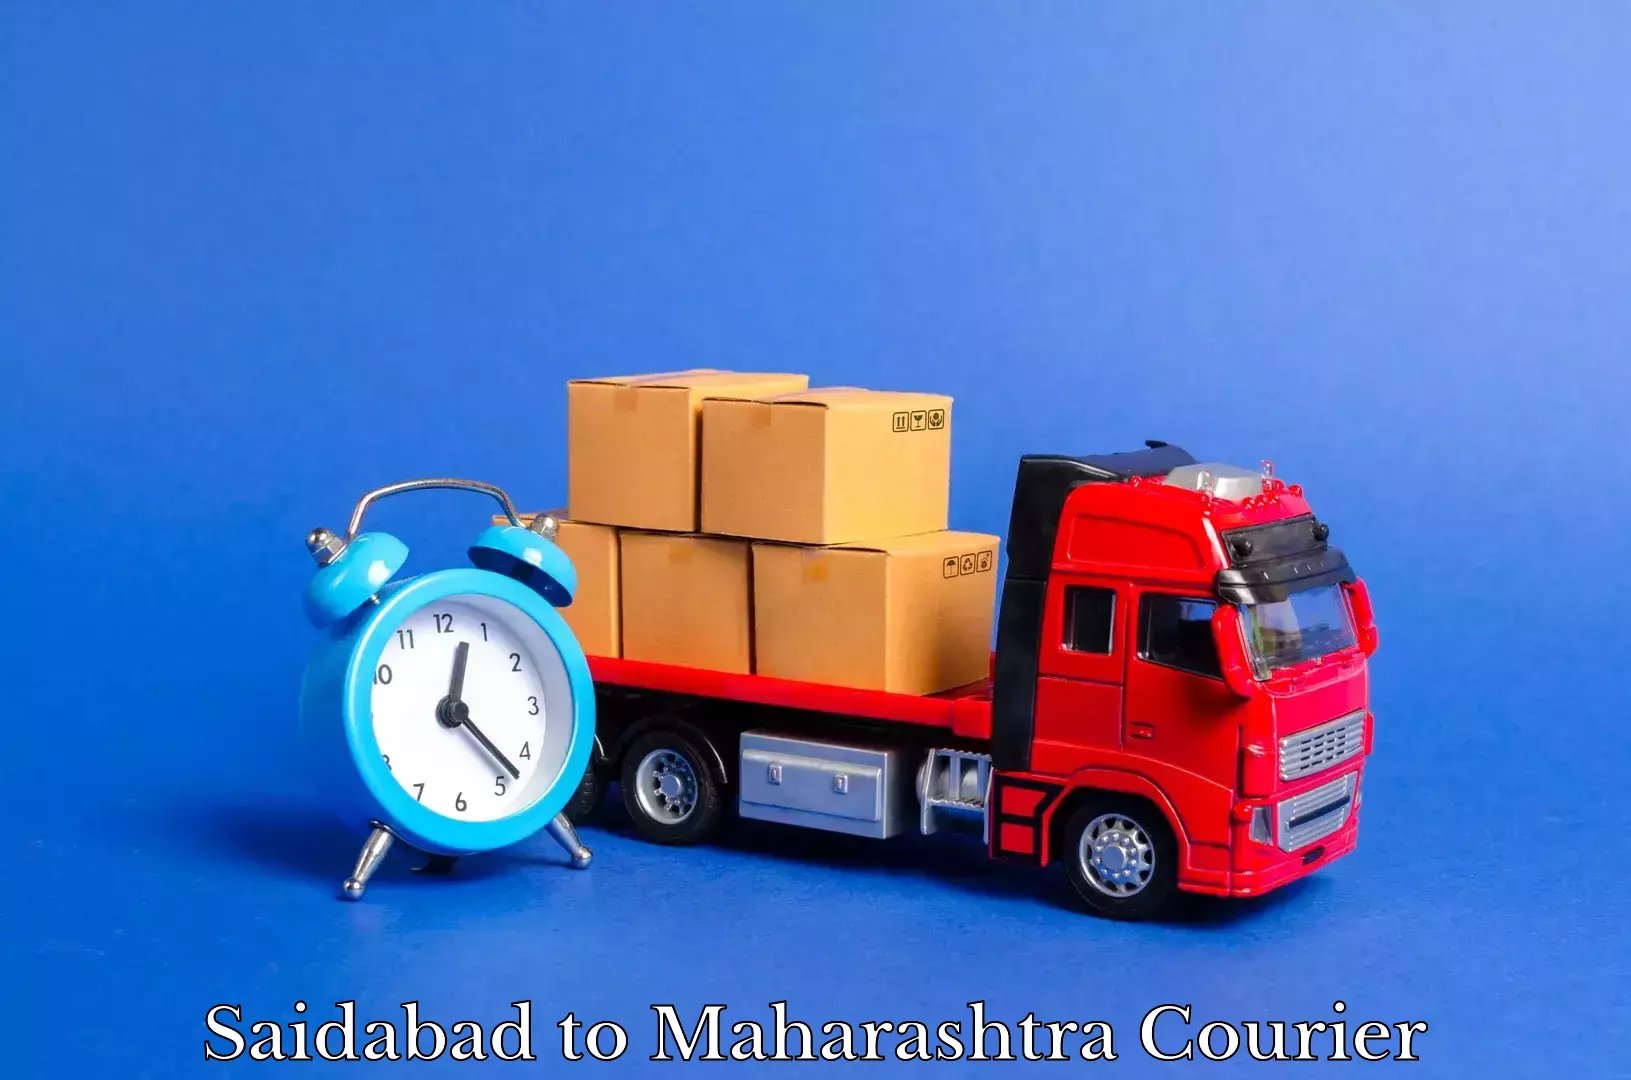 Stress-free household shifting Saidabad to Nandurbar